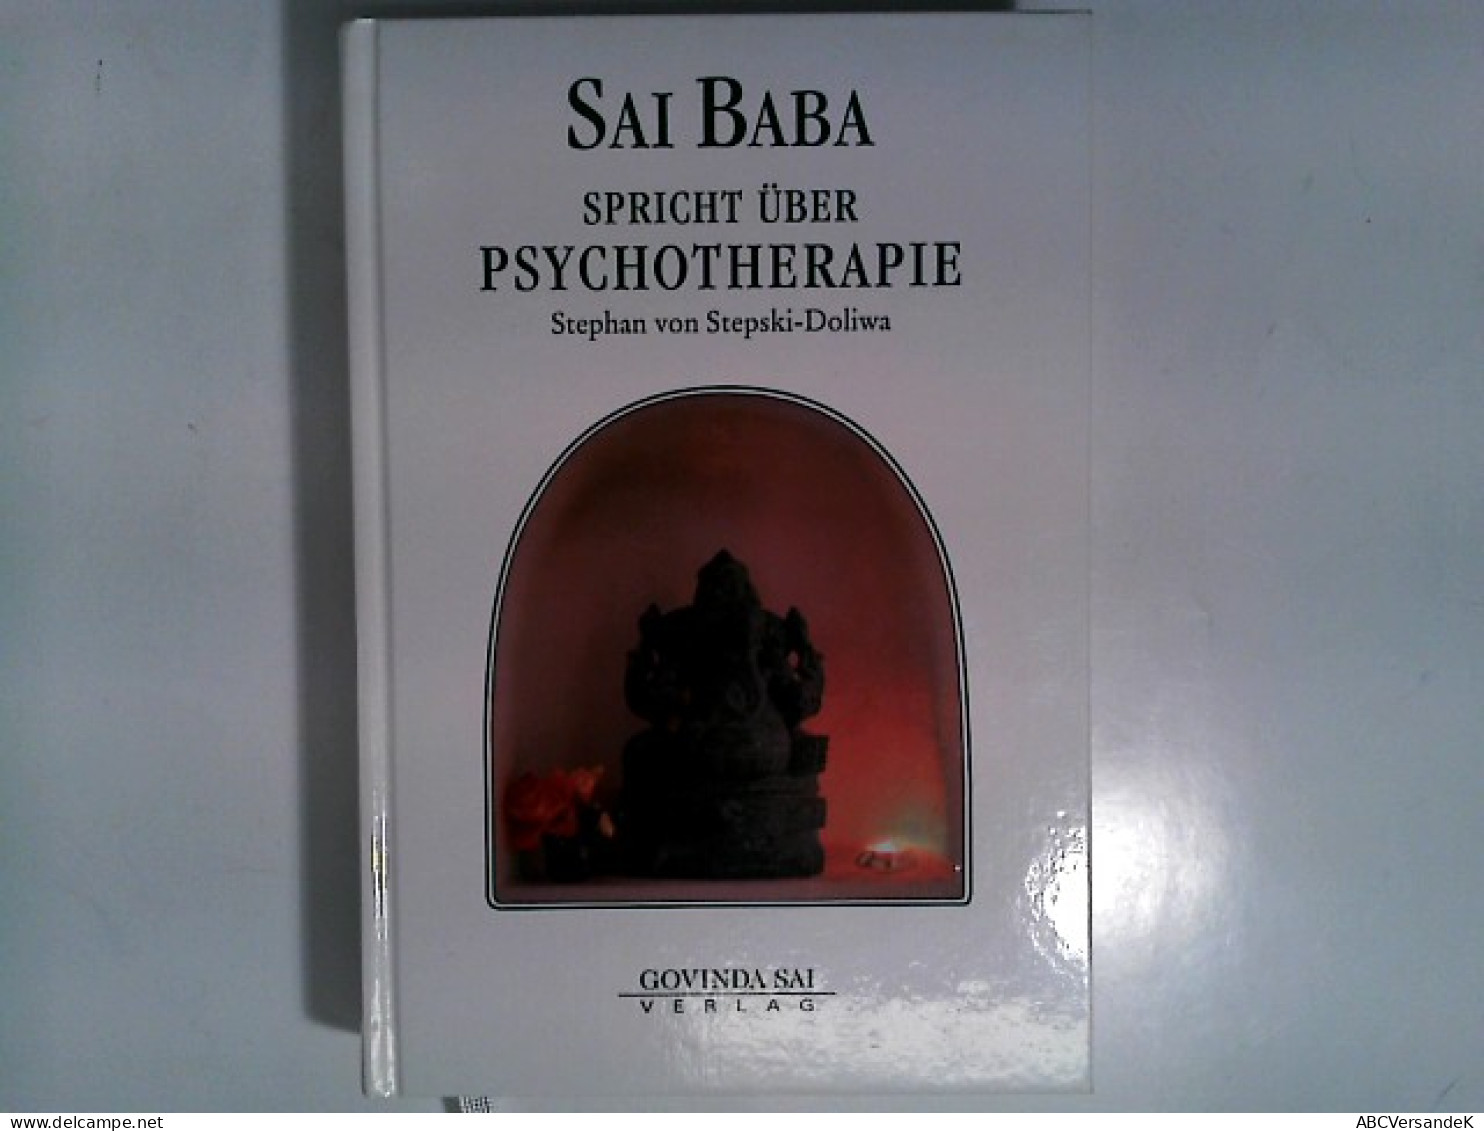 Sai Baba Spricht über Psychotherapie - Health & Medecine